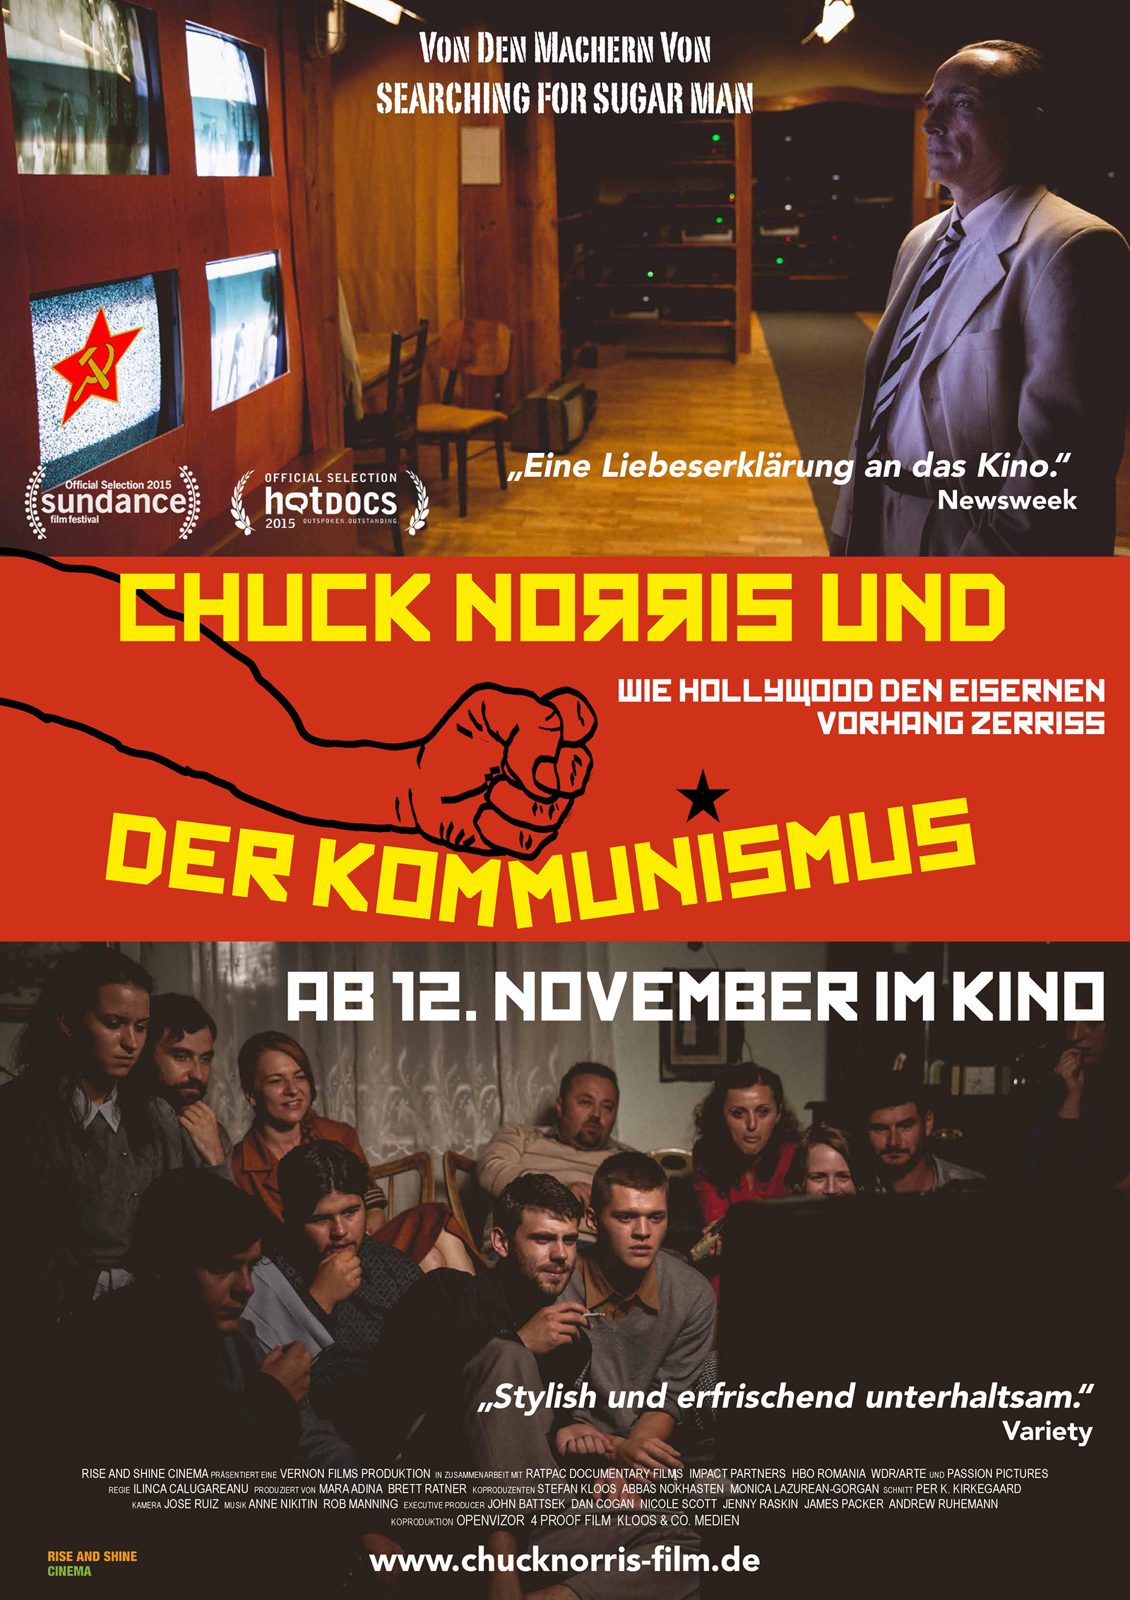 Chuck Norris und der Kommunismus | Film-Rezensionen.de1130 x 1600